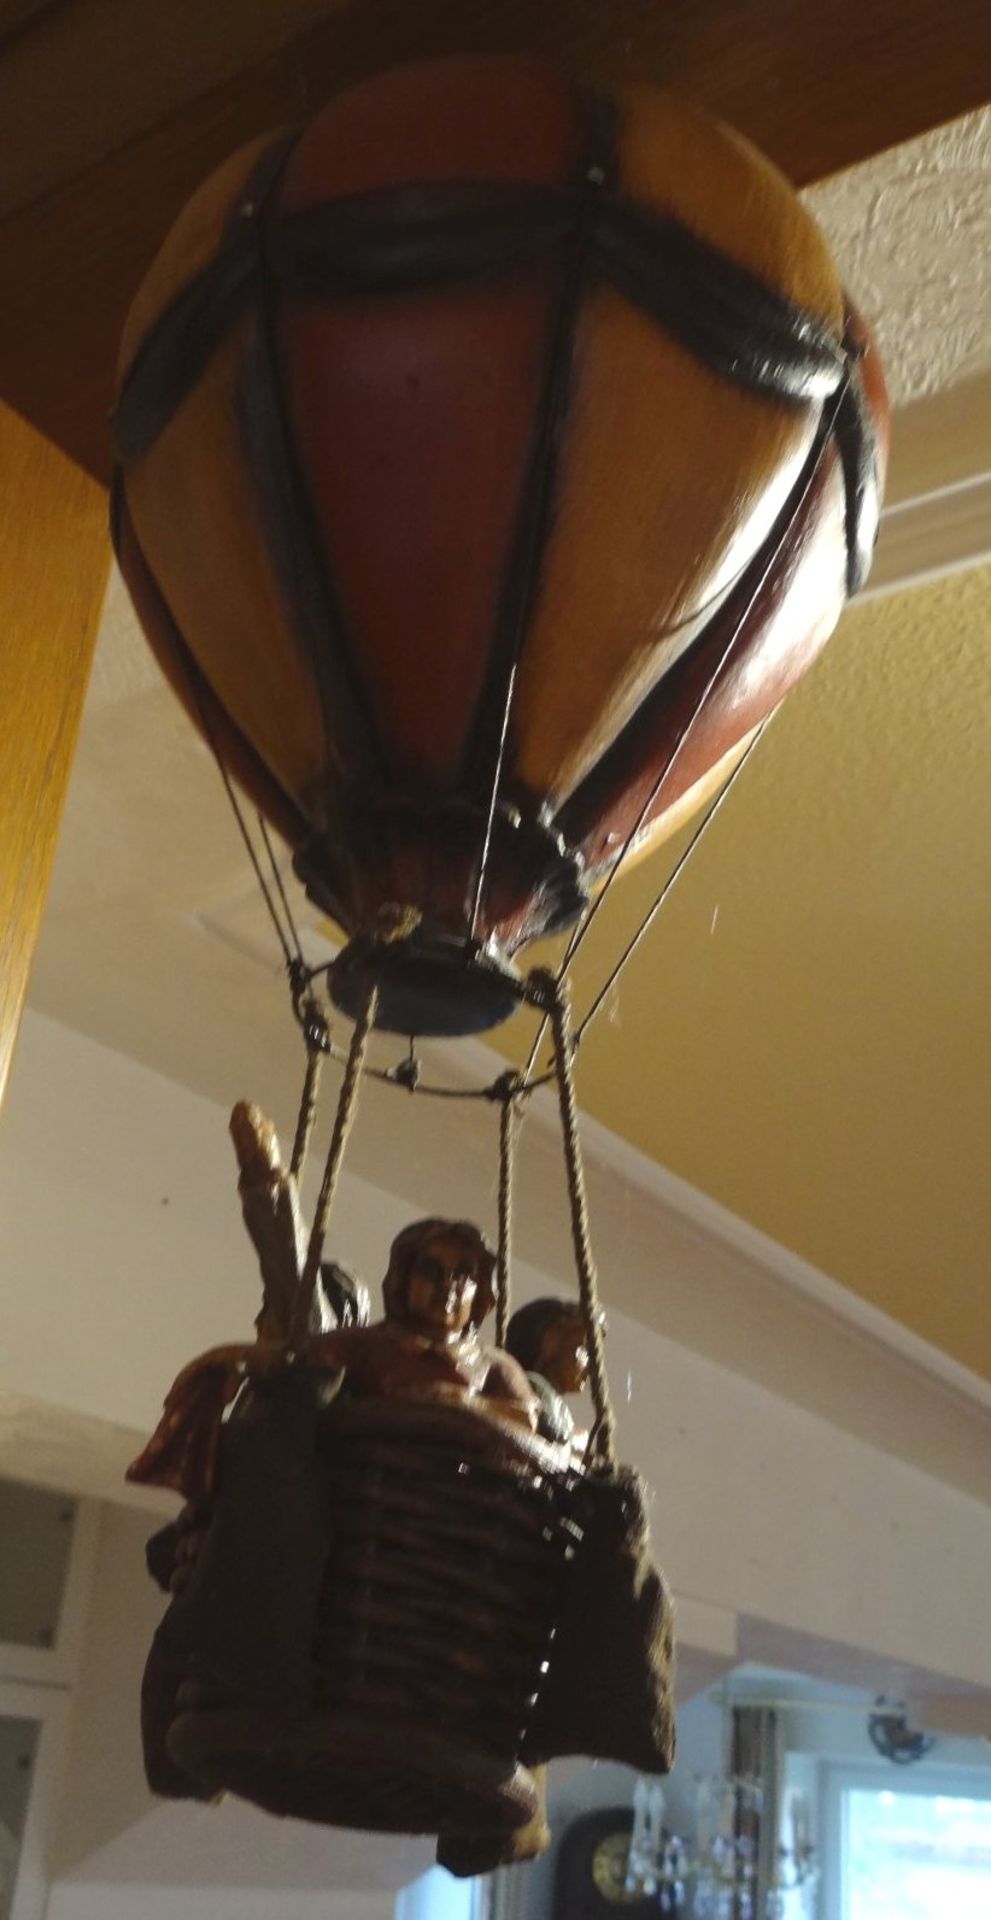 gr. Flugballon mit Korb und Figuren, Holz, neuzeitlich, H-40 cm - Bild 2 aus 3